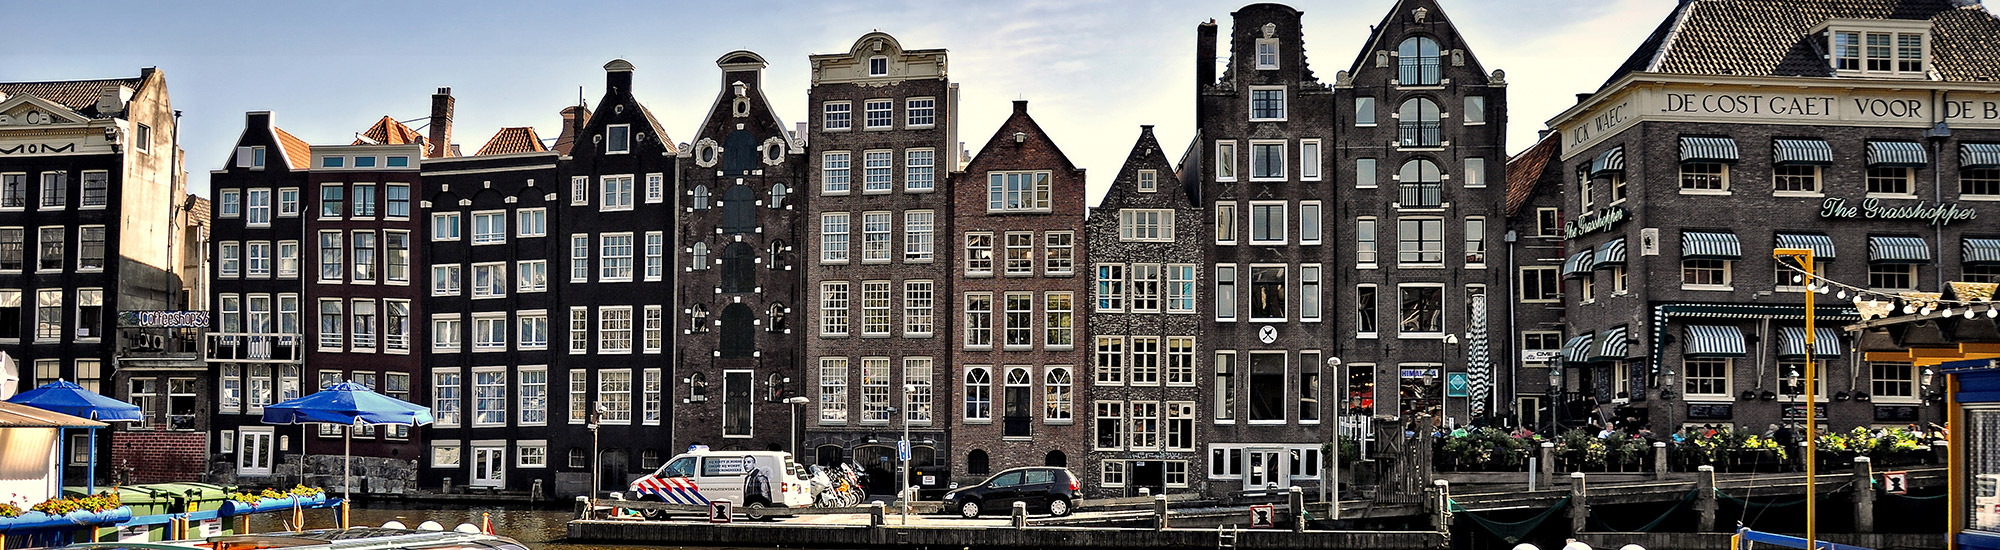 Schildersbedrijven Amsterdam